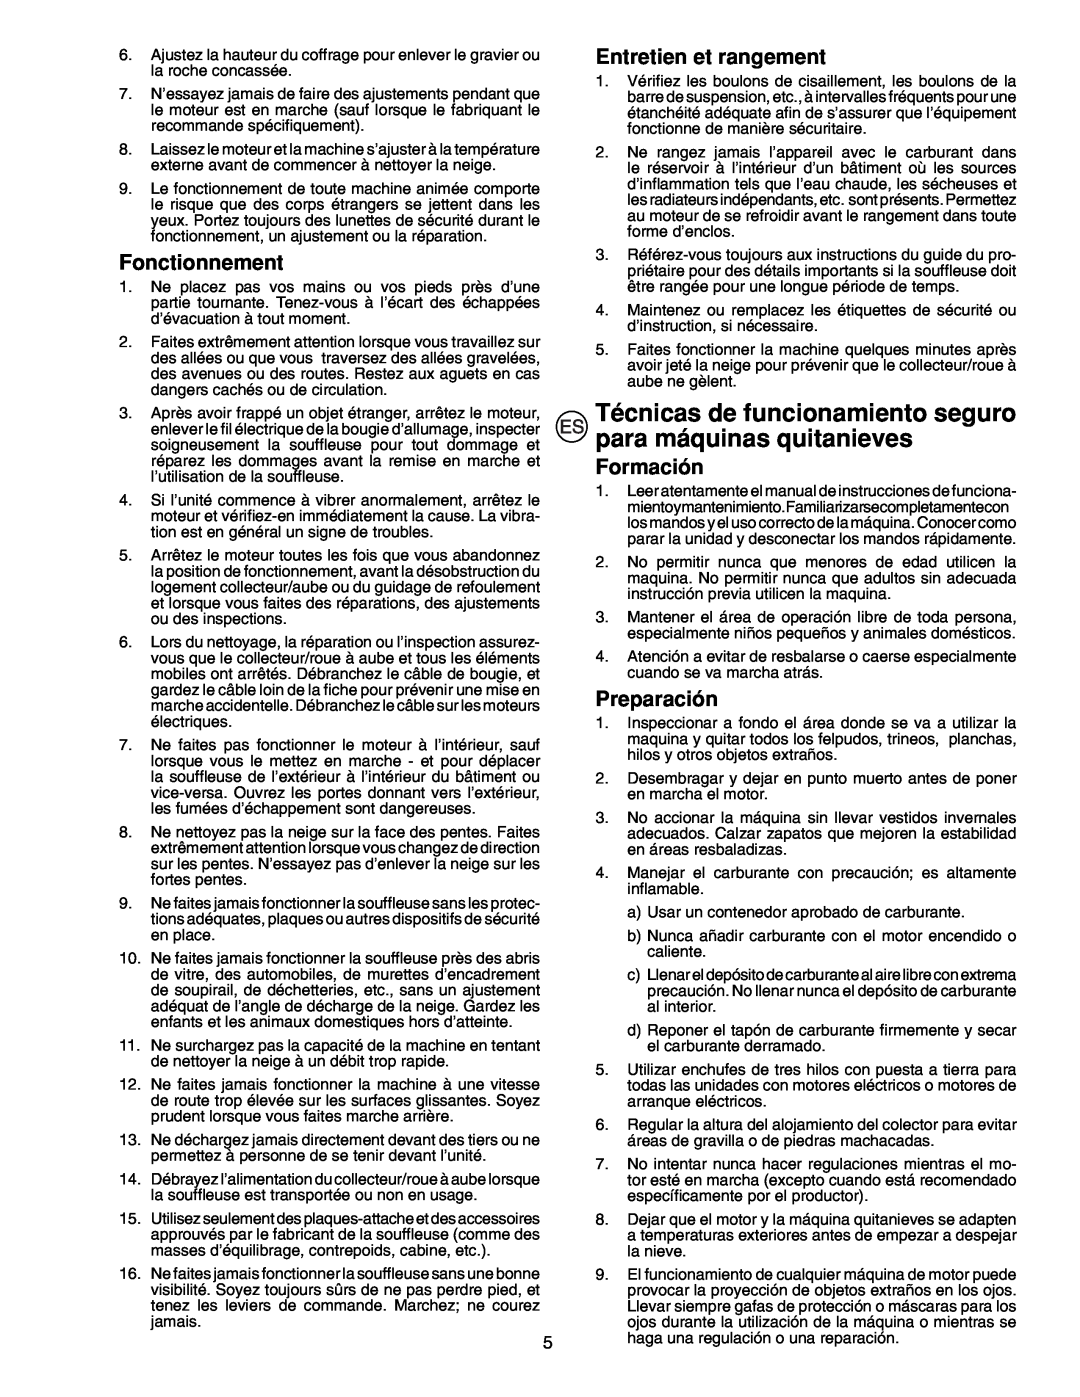 McCulloch PM105, PM55, PM85 instruction manual Fonctionnement, Entretien et rangement, Formación, Preparación 